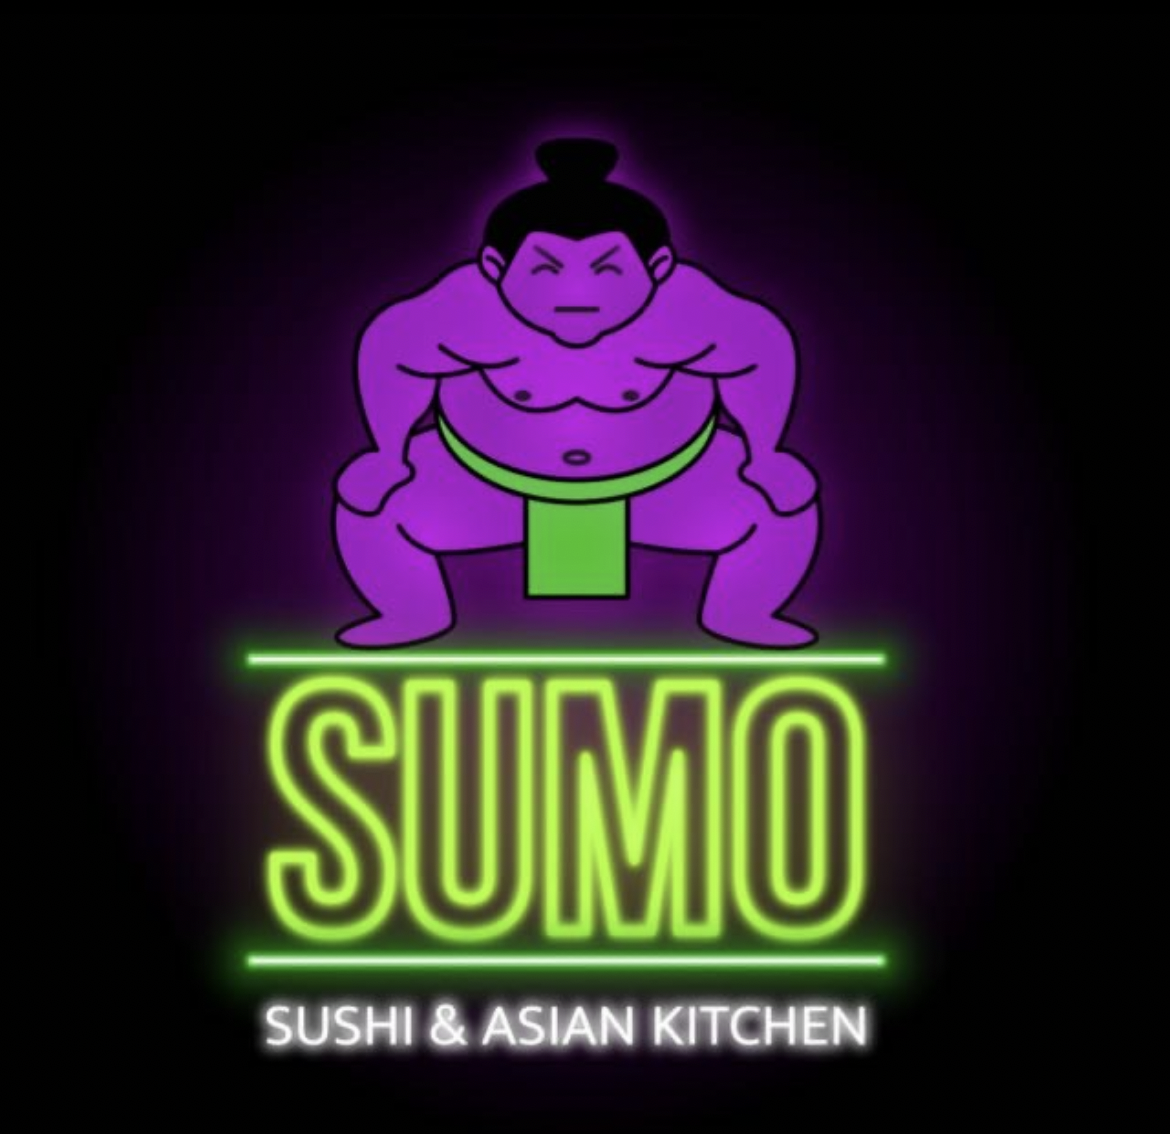 לוגו רשמי - מסעדת סומו - סושי ואסיאתי בחולון